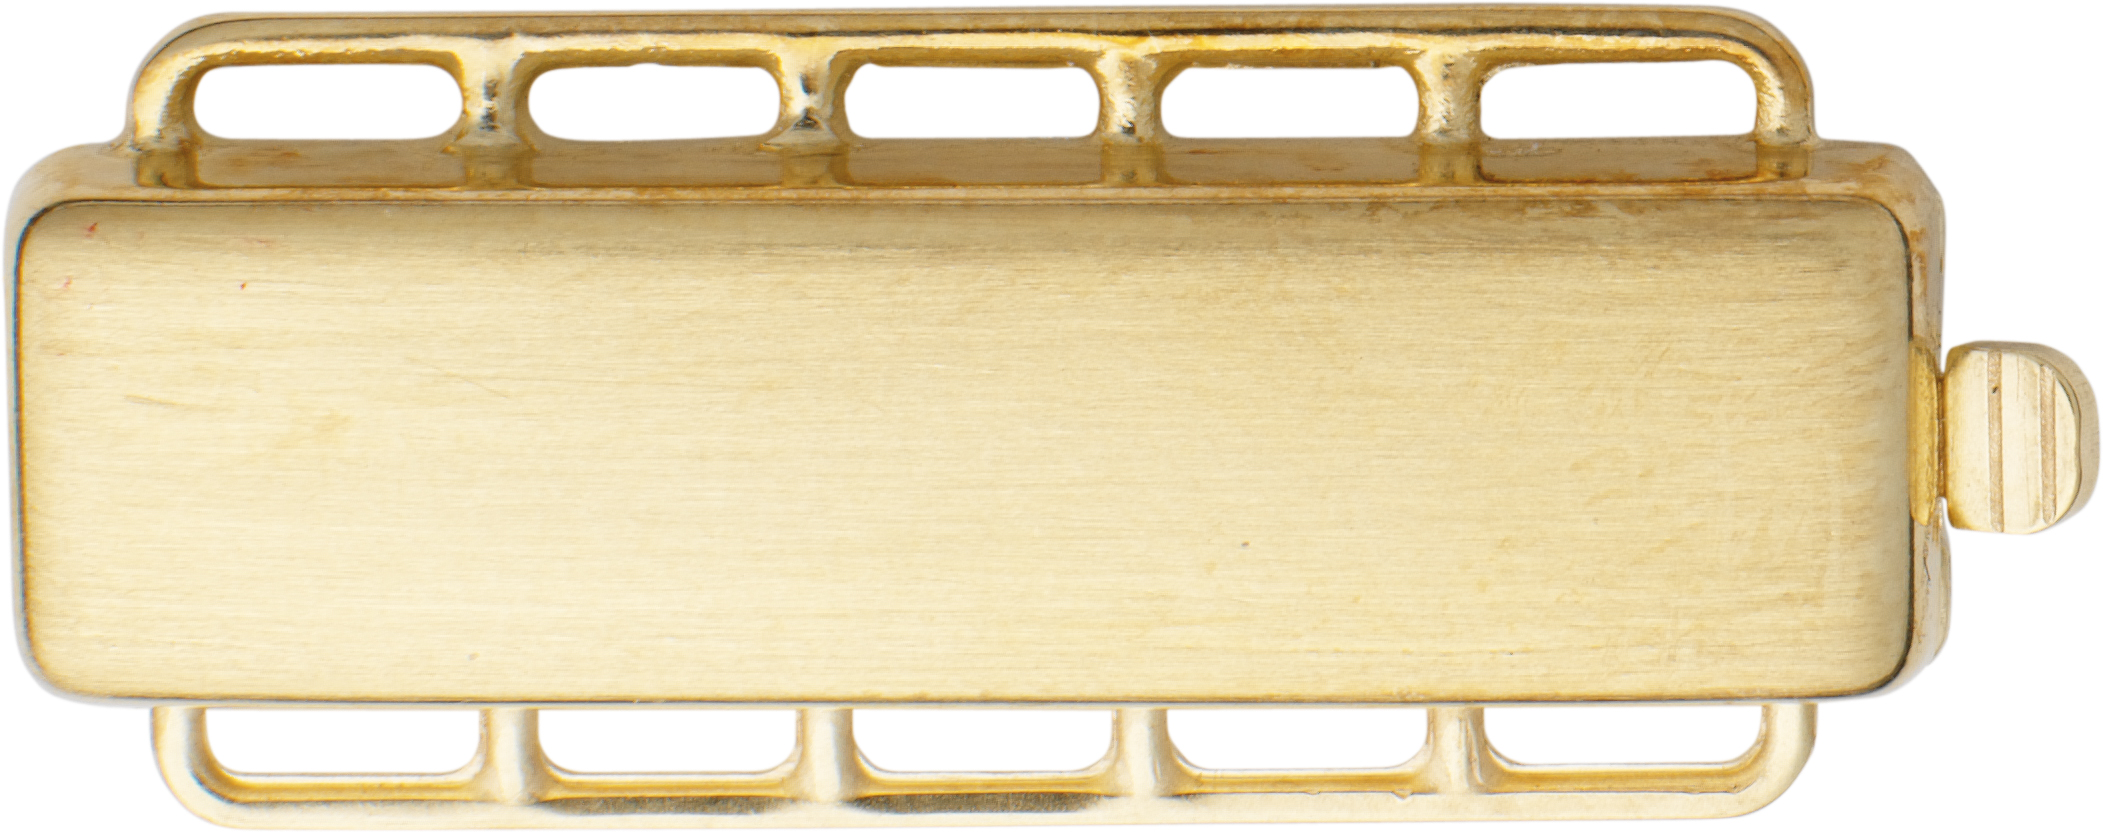 Zapięcie - 5-rzędowe  złoto 585/-żółte złoto prostokątne, dł. 28,00 x szer. 8,00mm